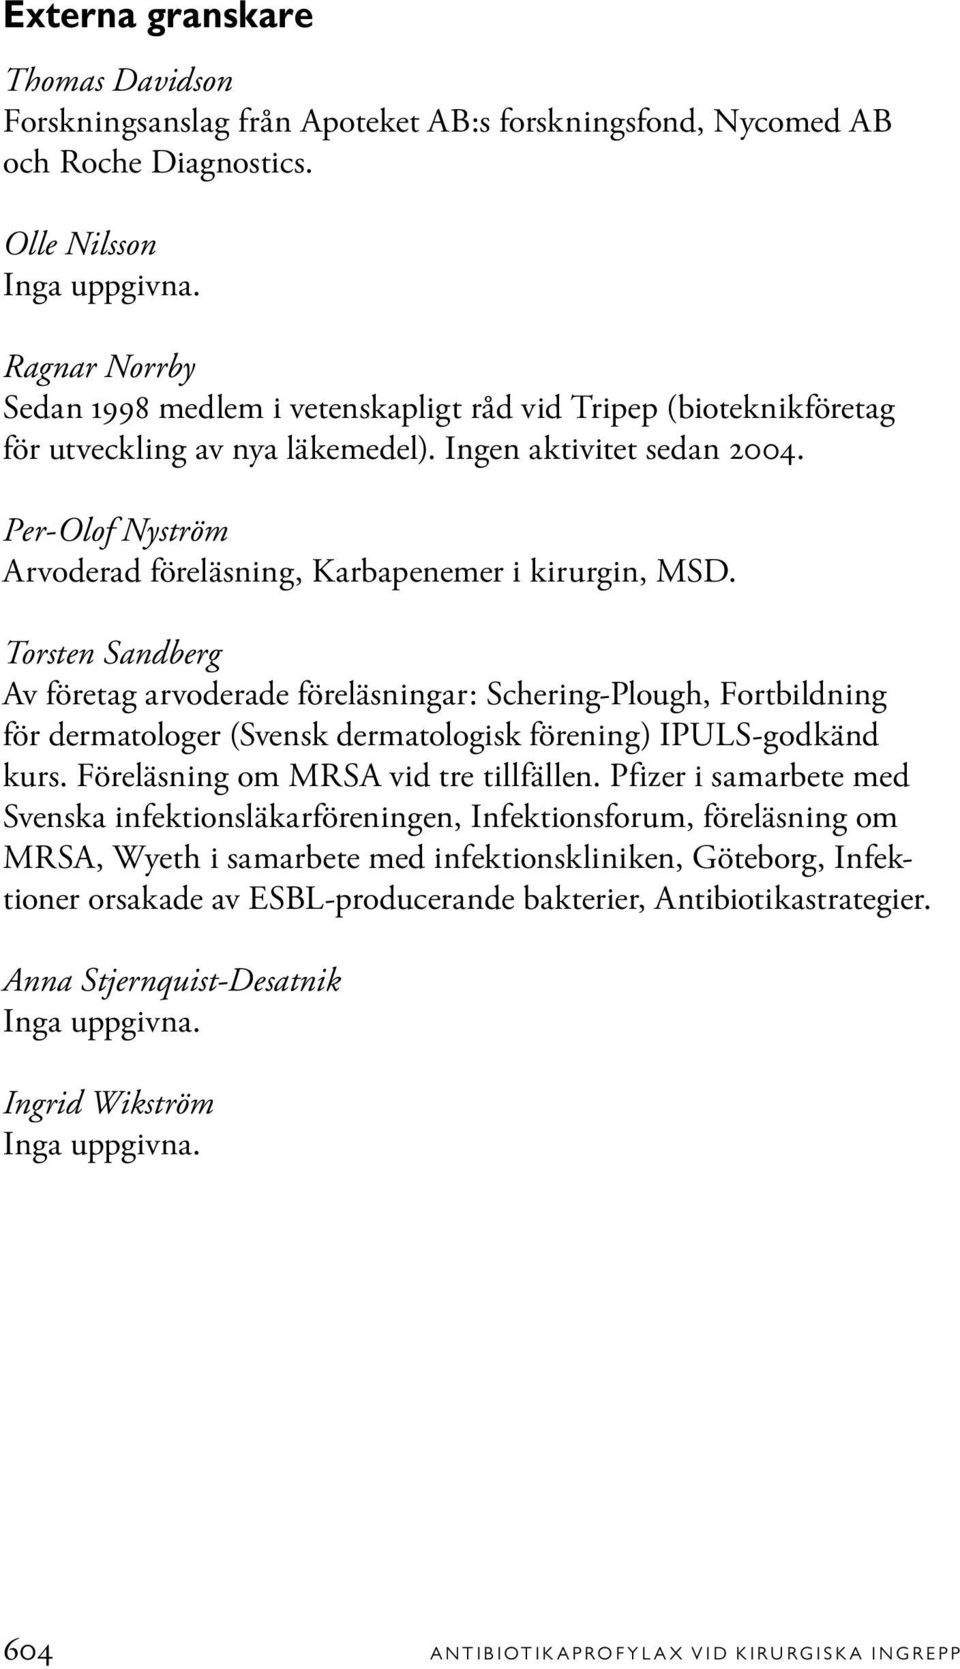 Per-Olof Nyström Arvoderad föreläsning, Karbapenemer i kirurgin, MSD.